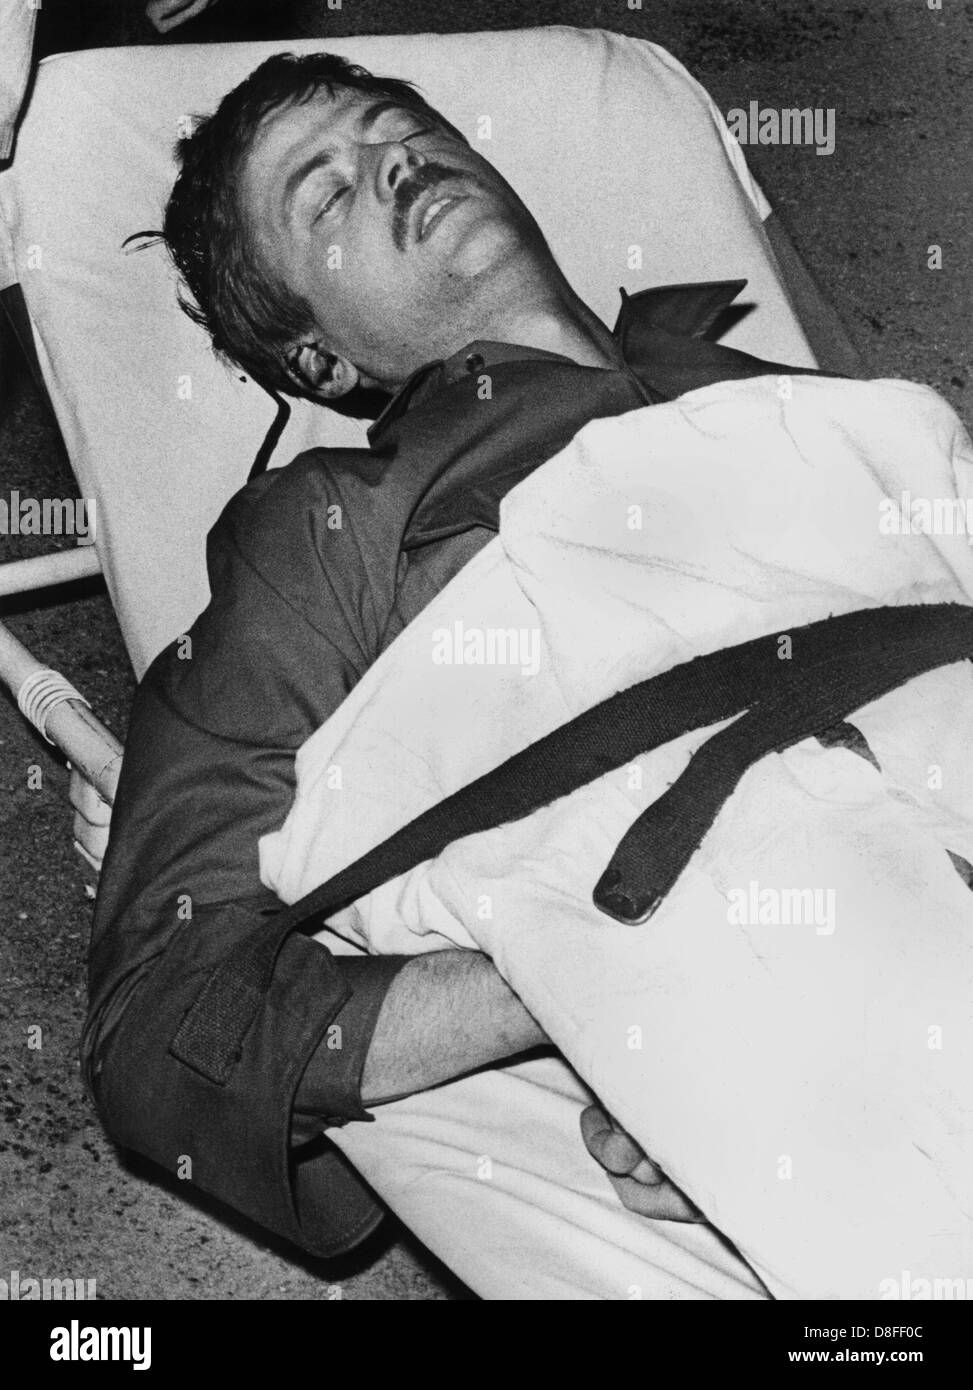 Benno Ohnesorg wird ins Krankenhaus gebracht, wo er später an seinen Verletzungen starb. Er wurde bei der Anti-Schah-Demonstration von einem Polizisten erschossen. Foto vom 2. Juni 1967. Stockfoto